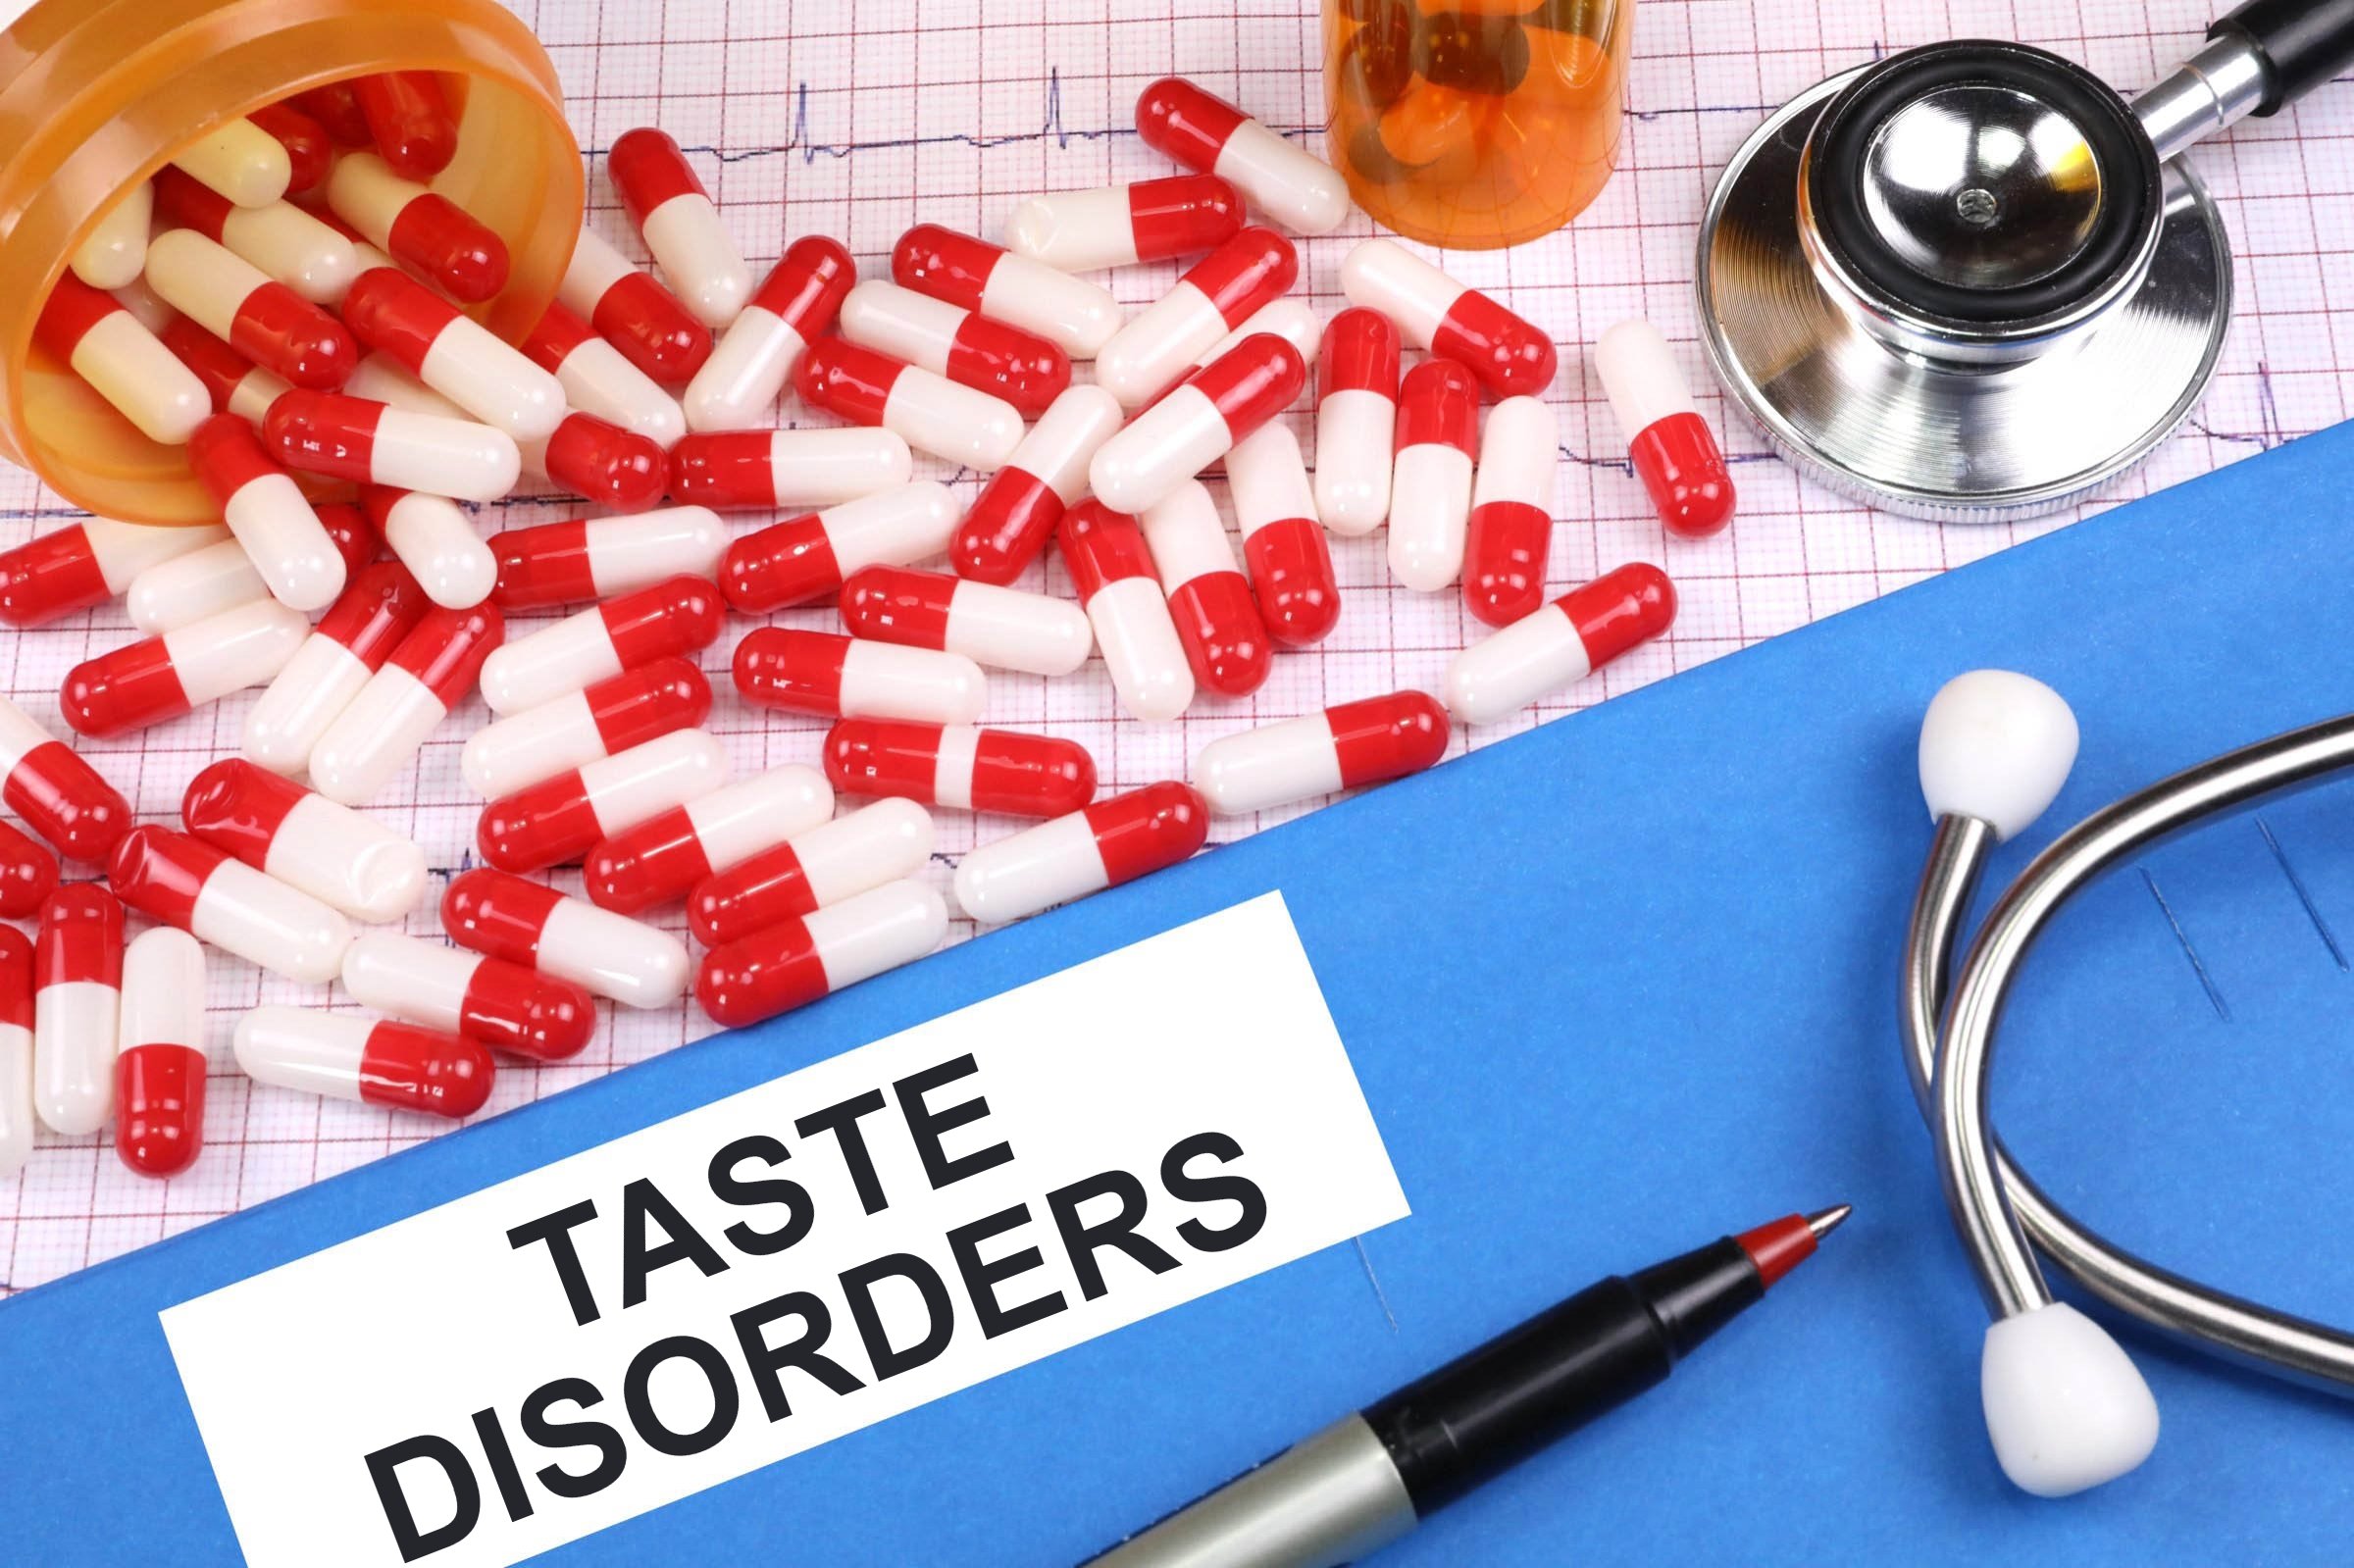 Taste disorder